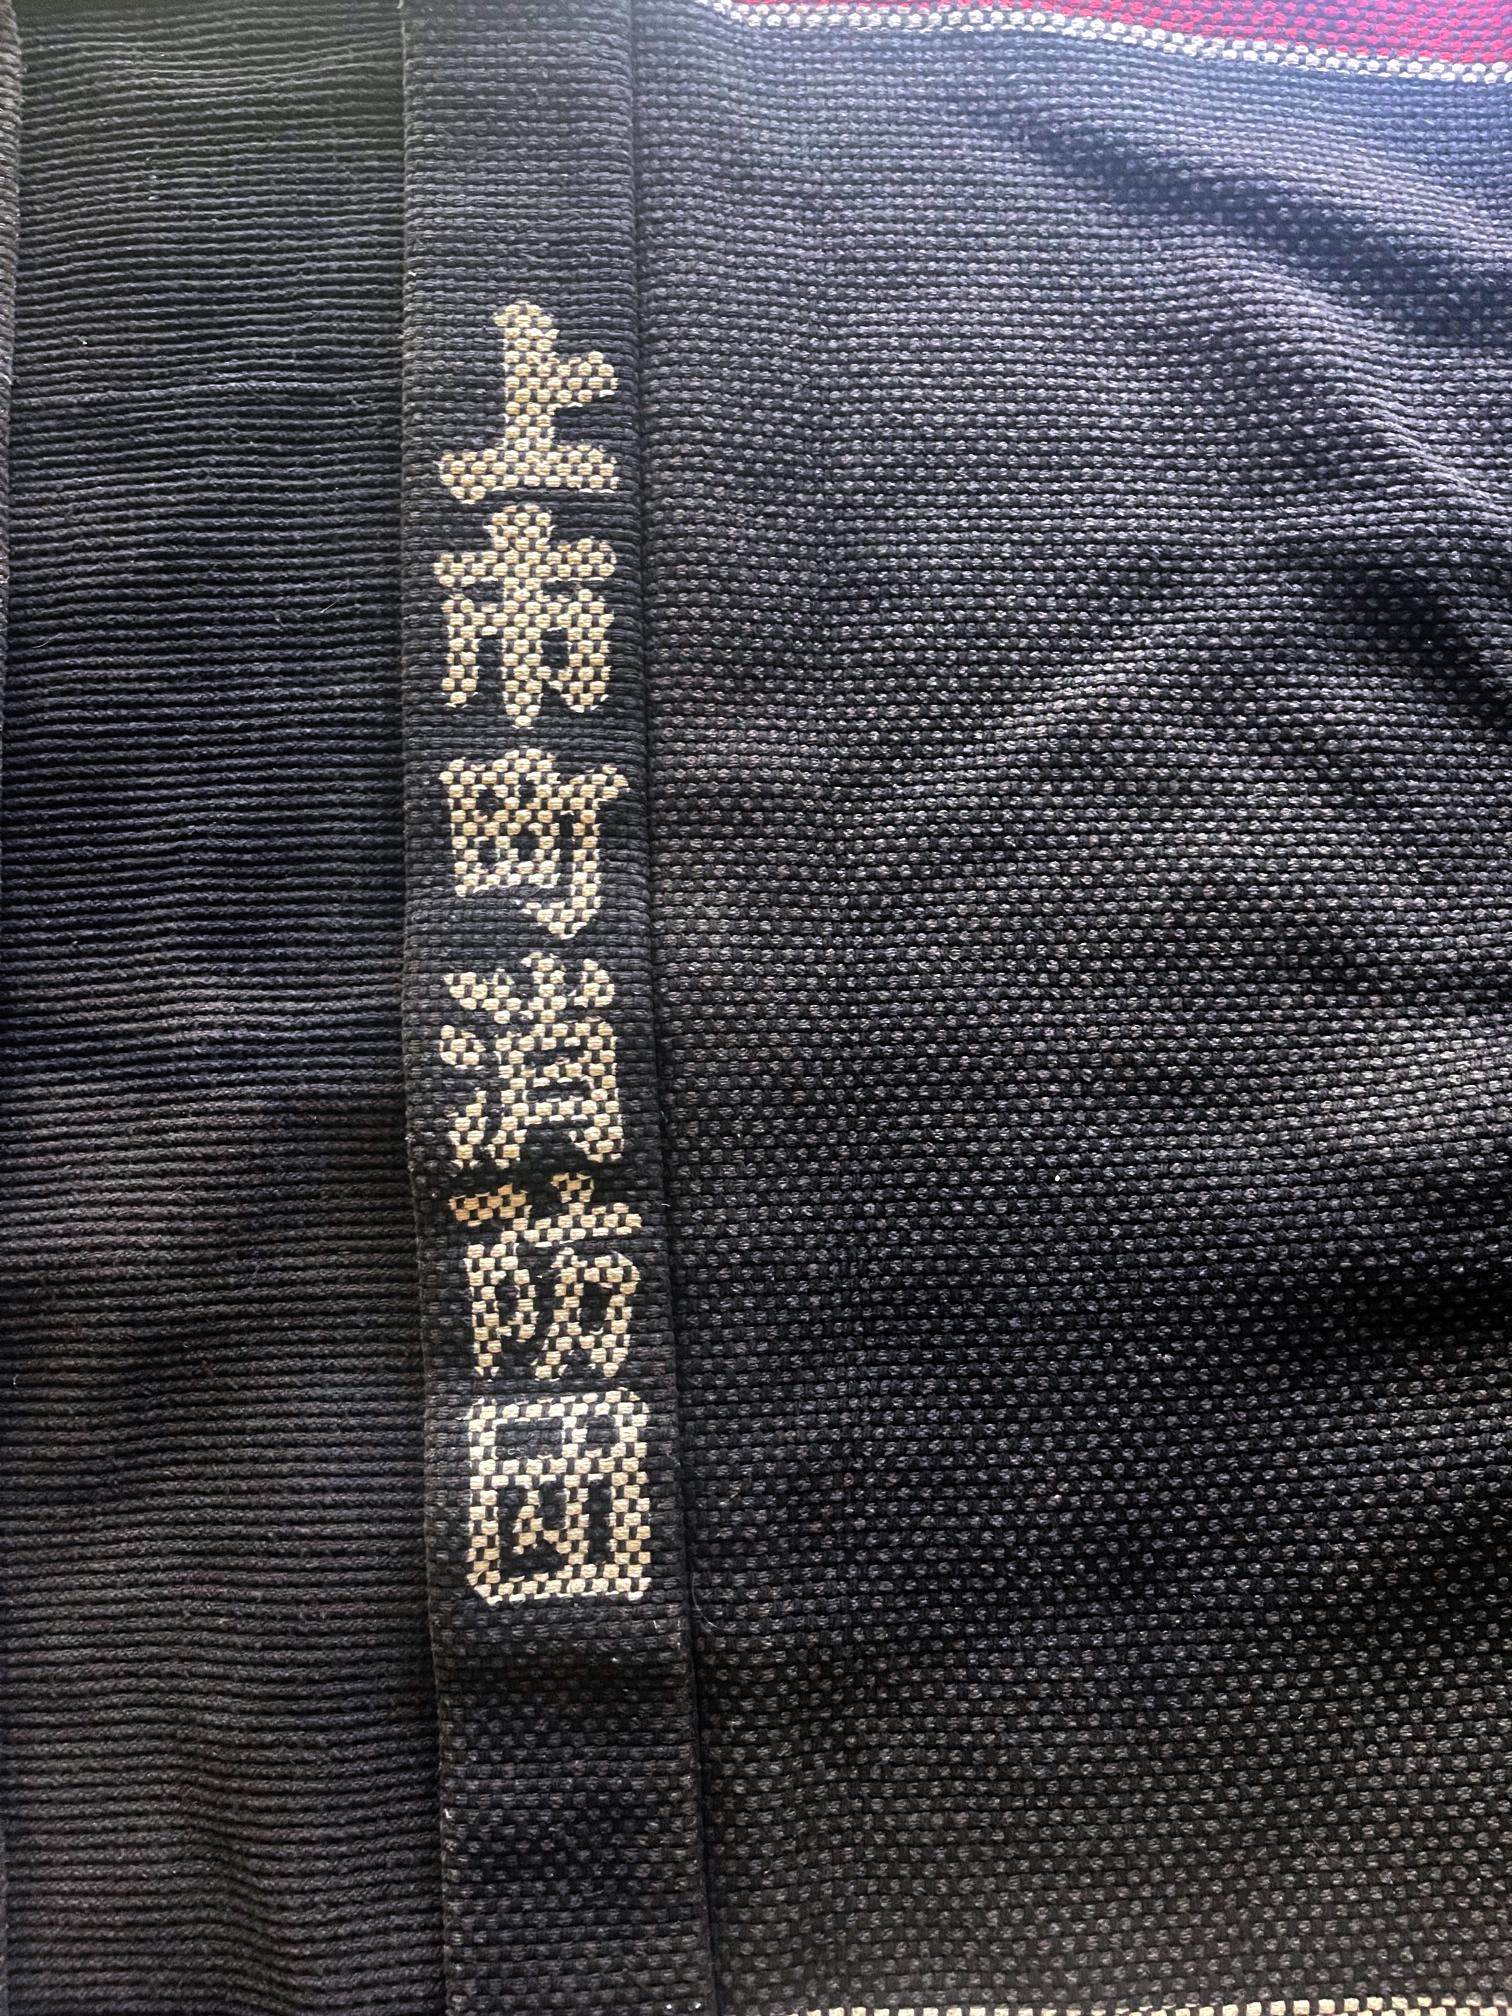 hikeshi banten jacket